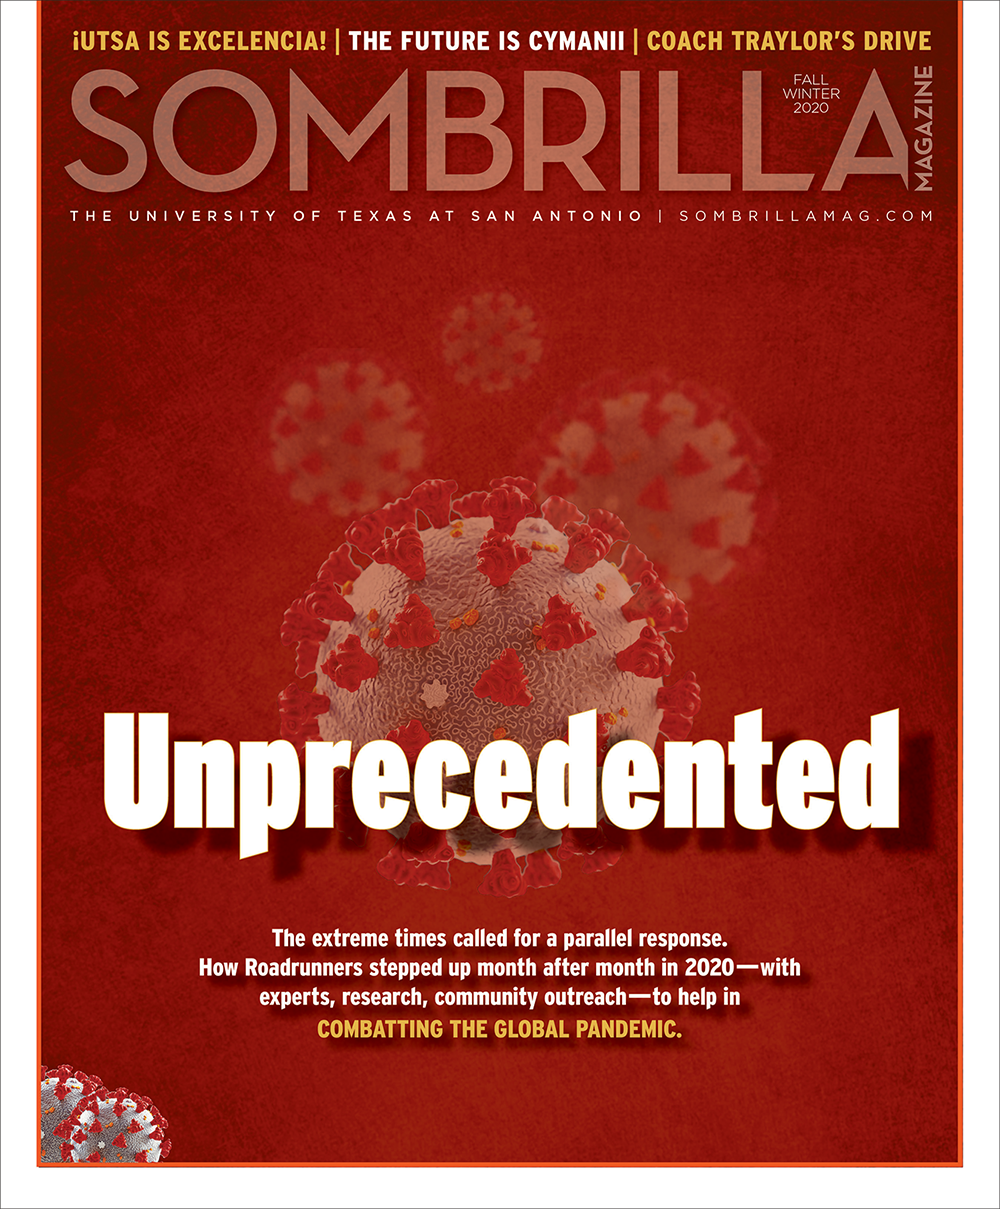 Sombrilla Magazine Fall/Winter 2020